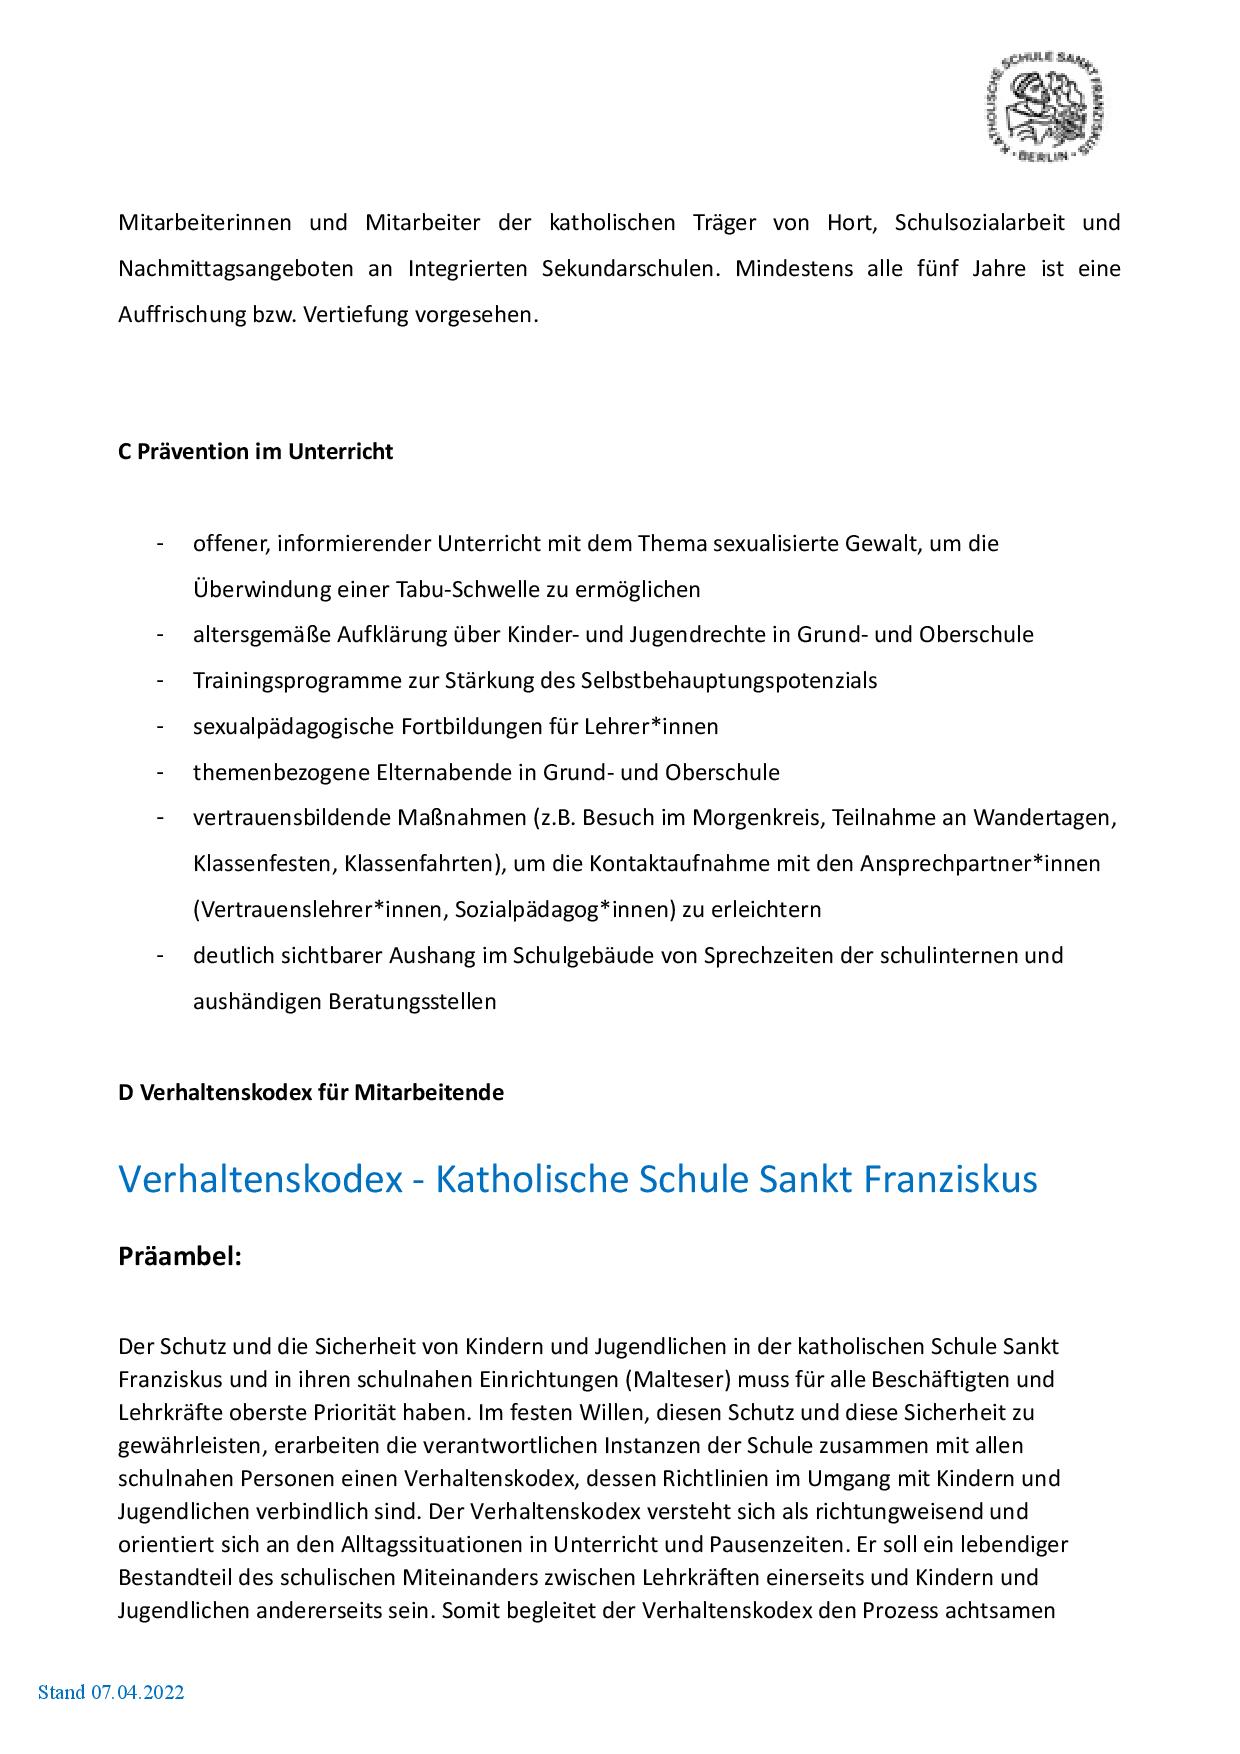 Schutzkonzept KSSF - aktualisiert 220210 - Beschluss 220830-page-004